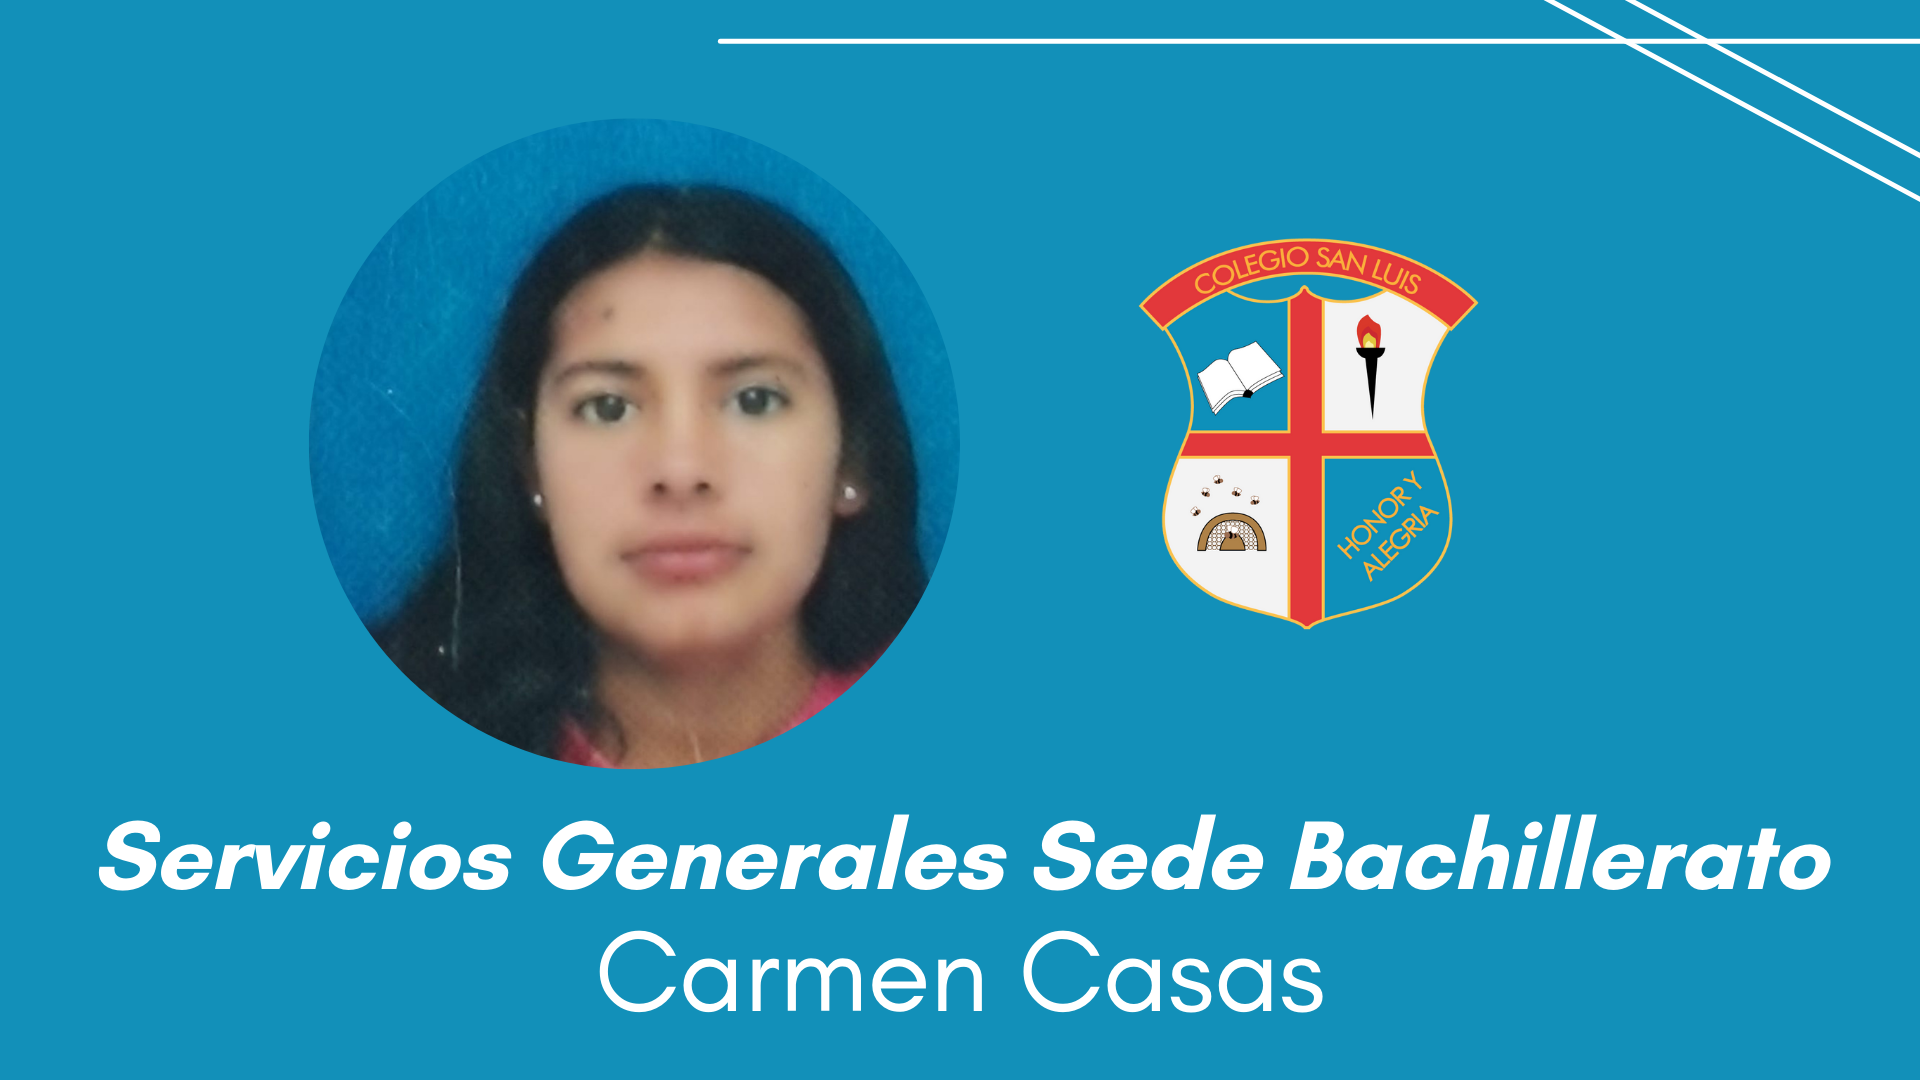 Carmen Casas